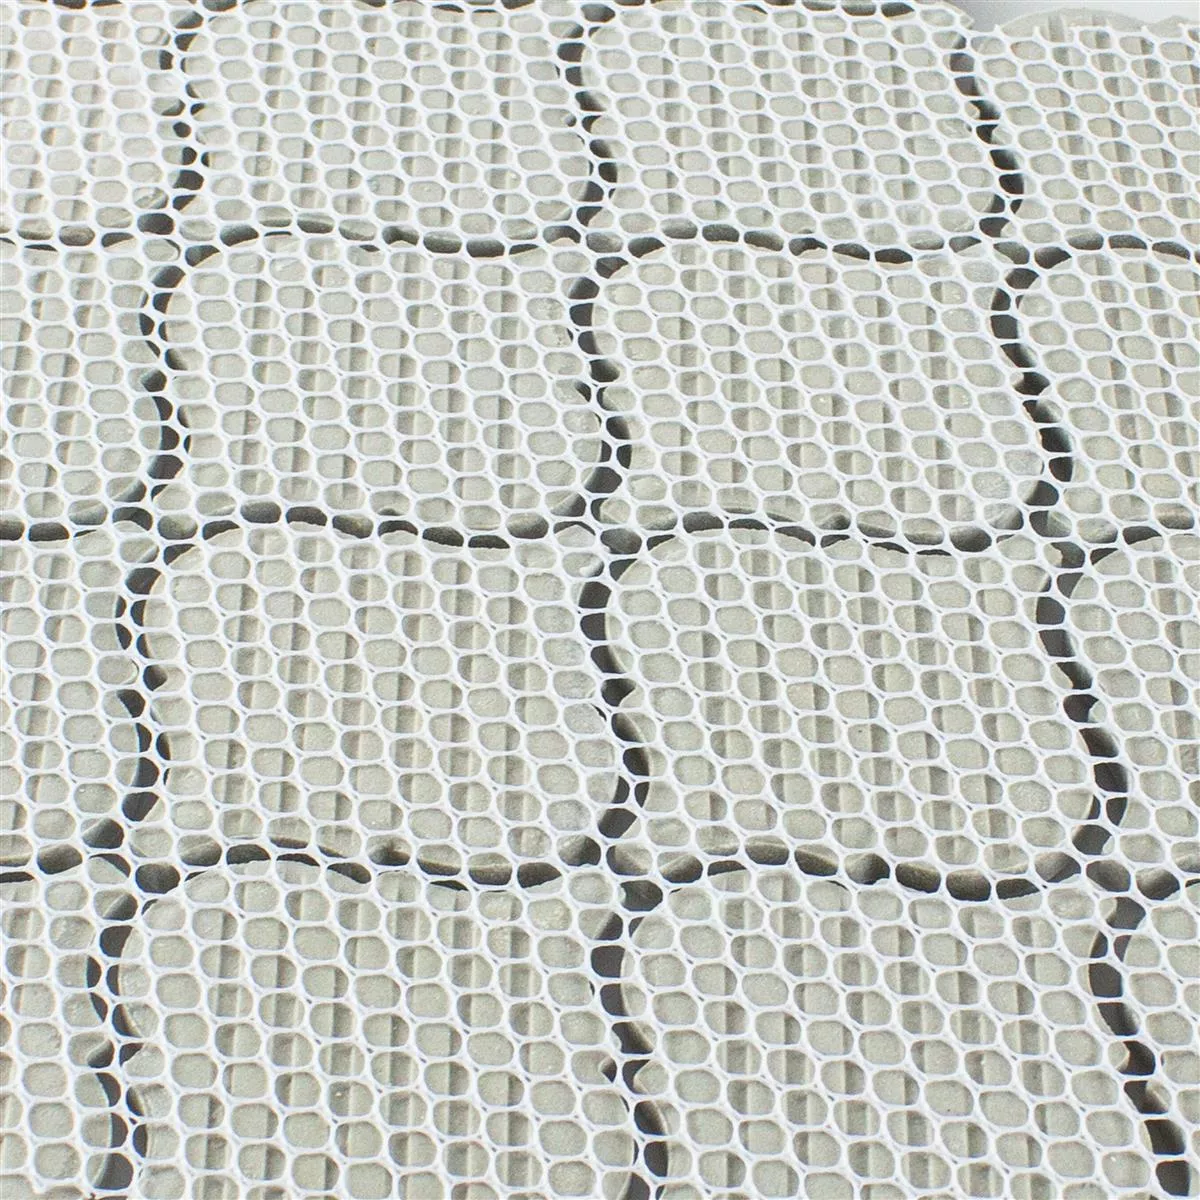 Sample Ceramic Mosaic Tiles Virginia Stone Optic Calacatta